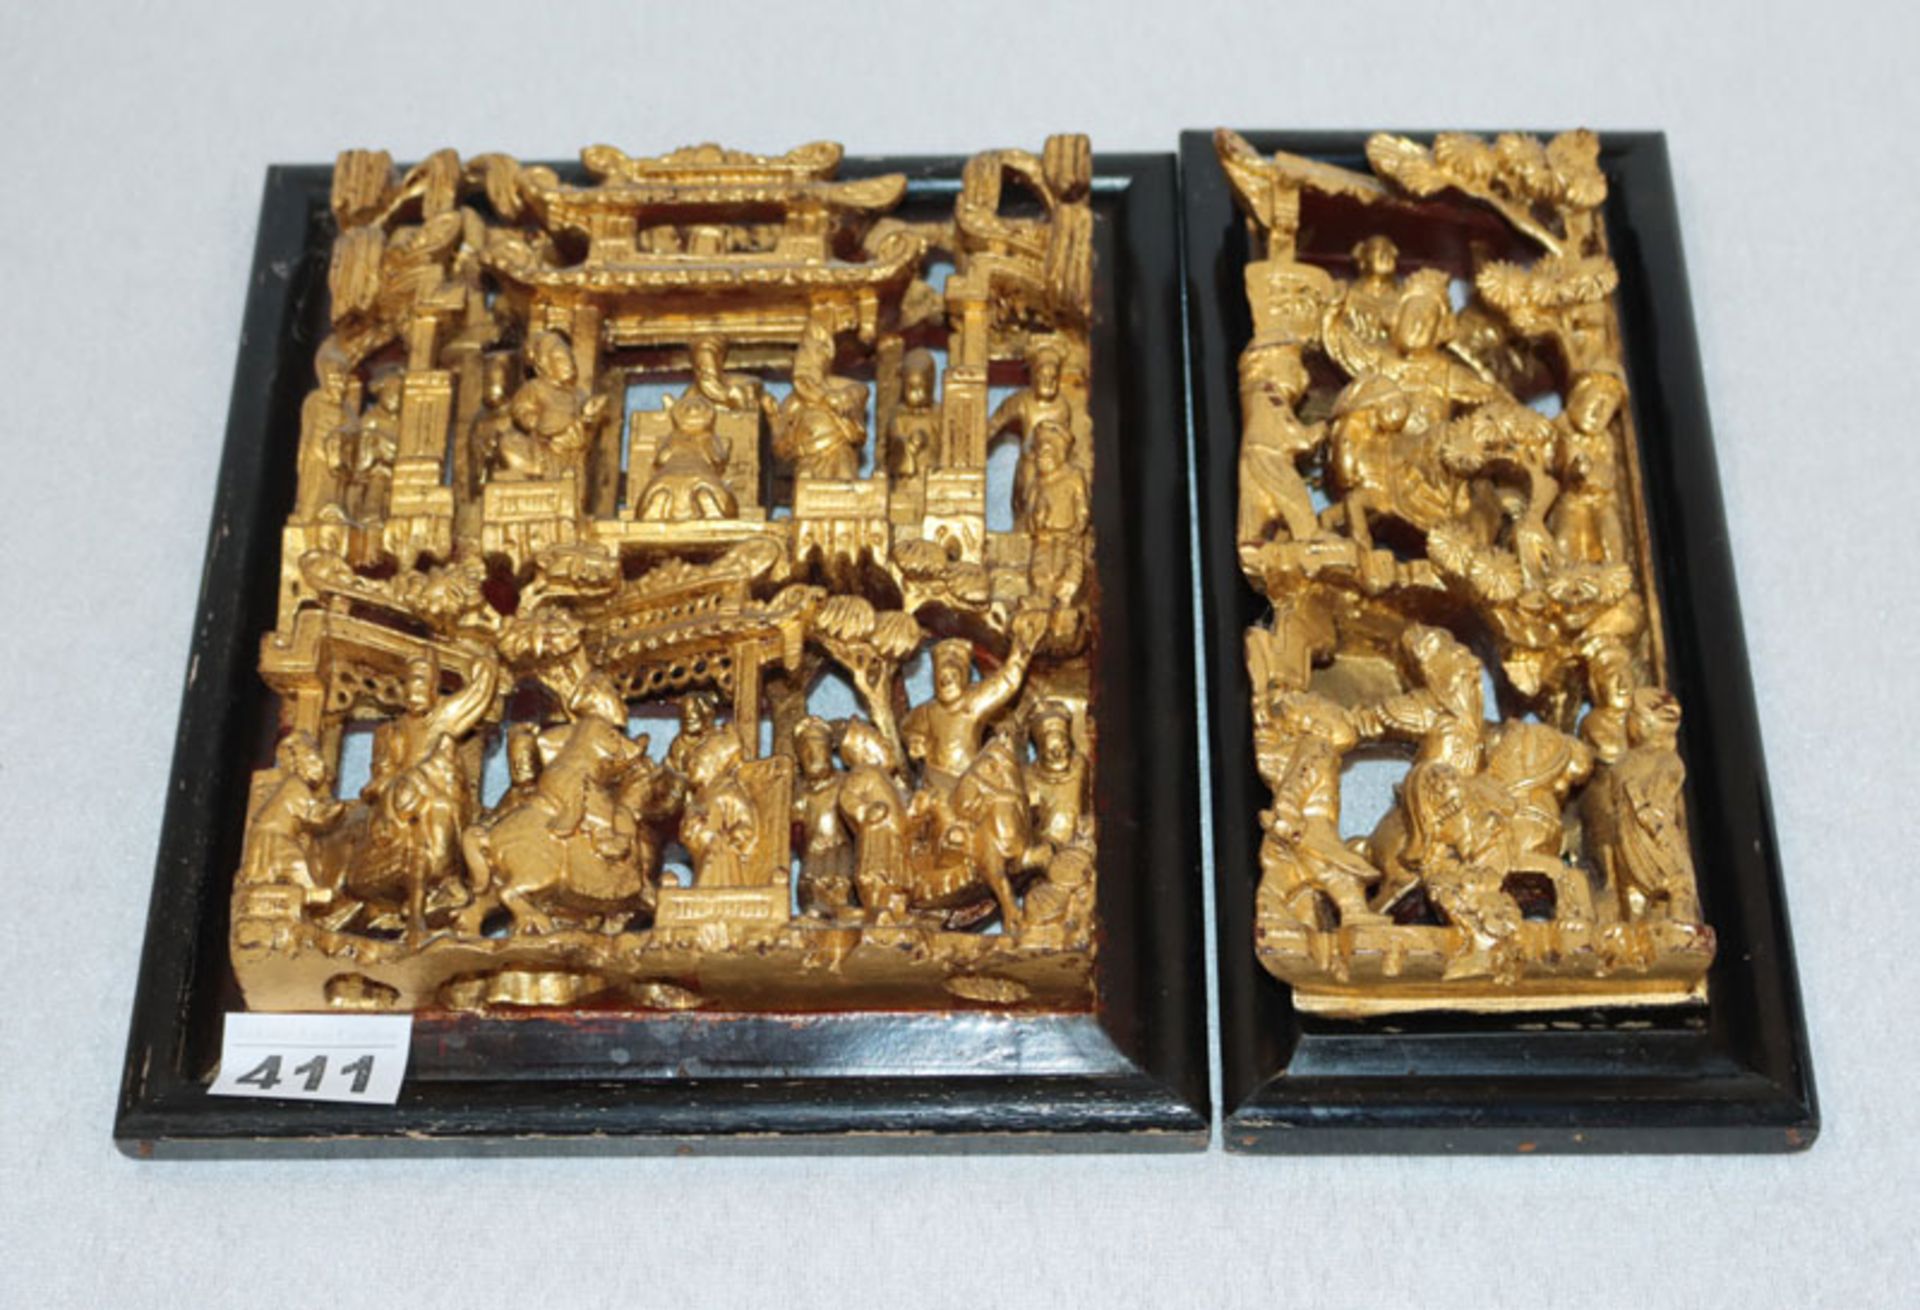 2 asiatische Holzornamente mit plastischer Figurenschnitzerei, gold gefaßt in schwarzen Rahmen, 26,5